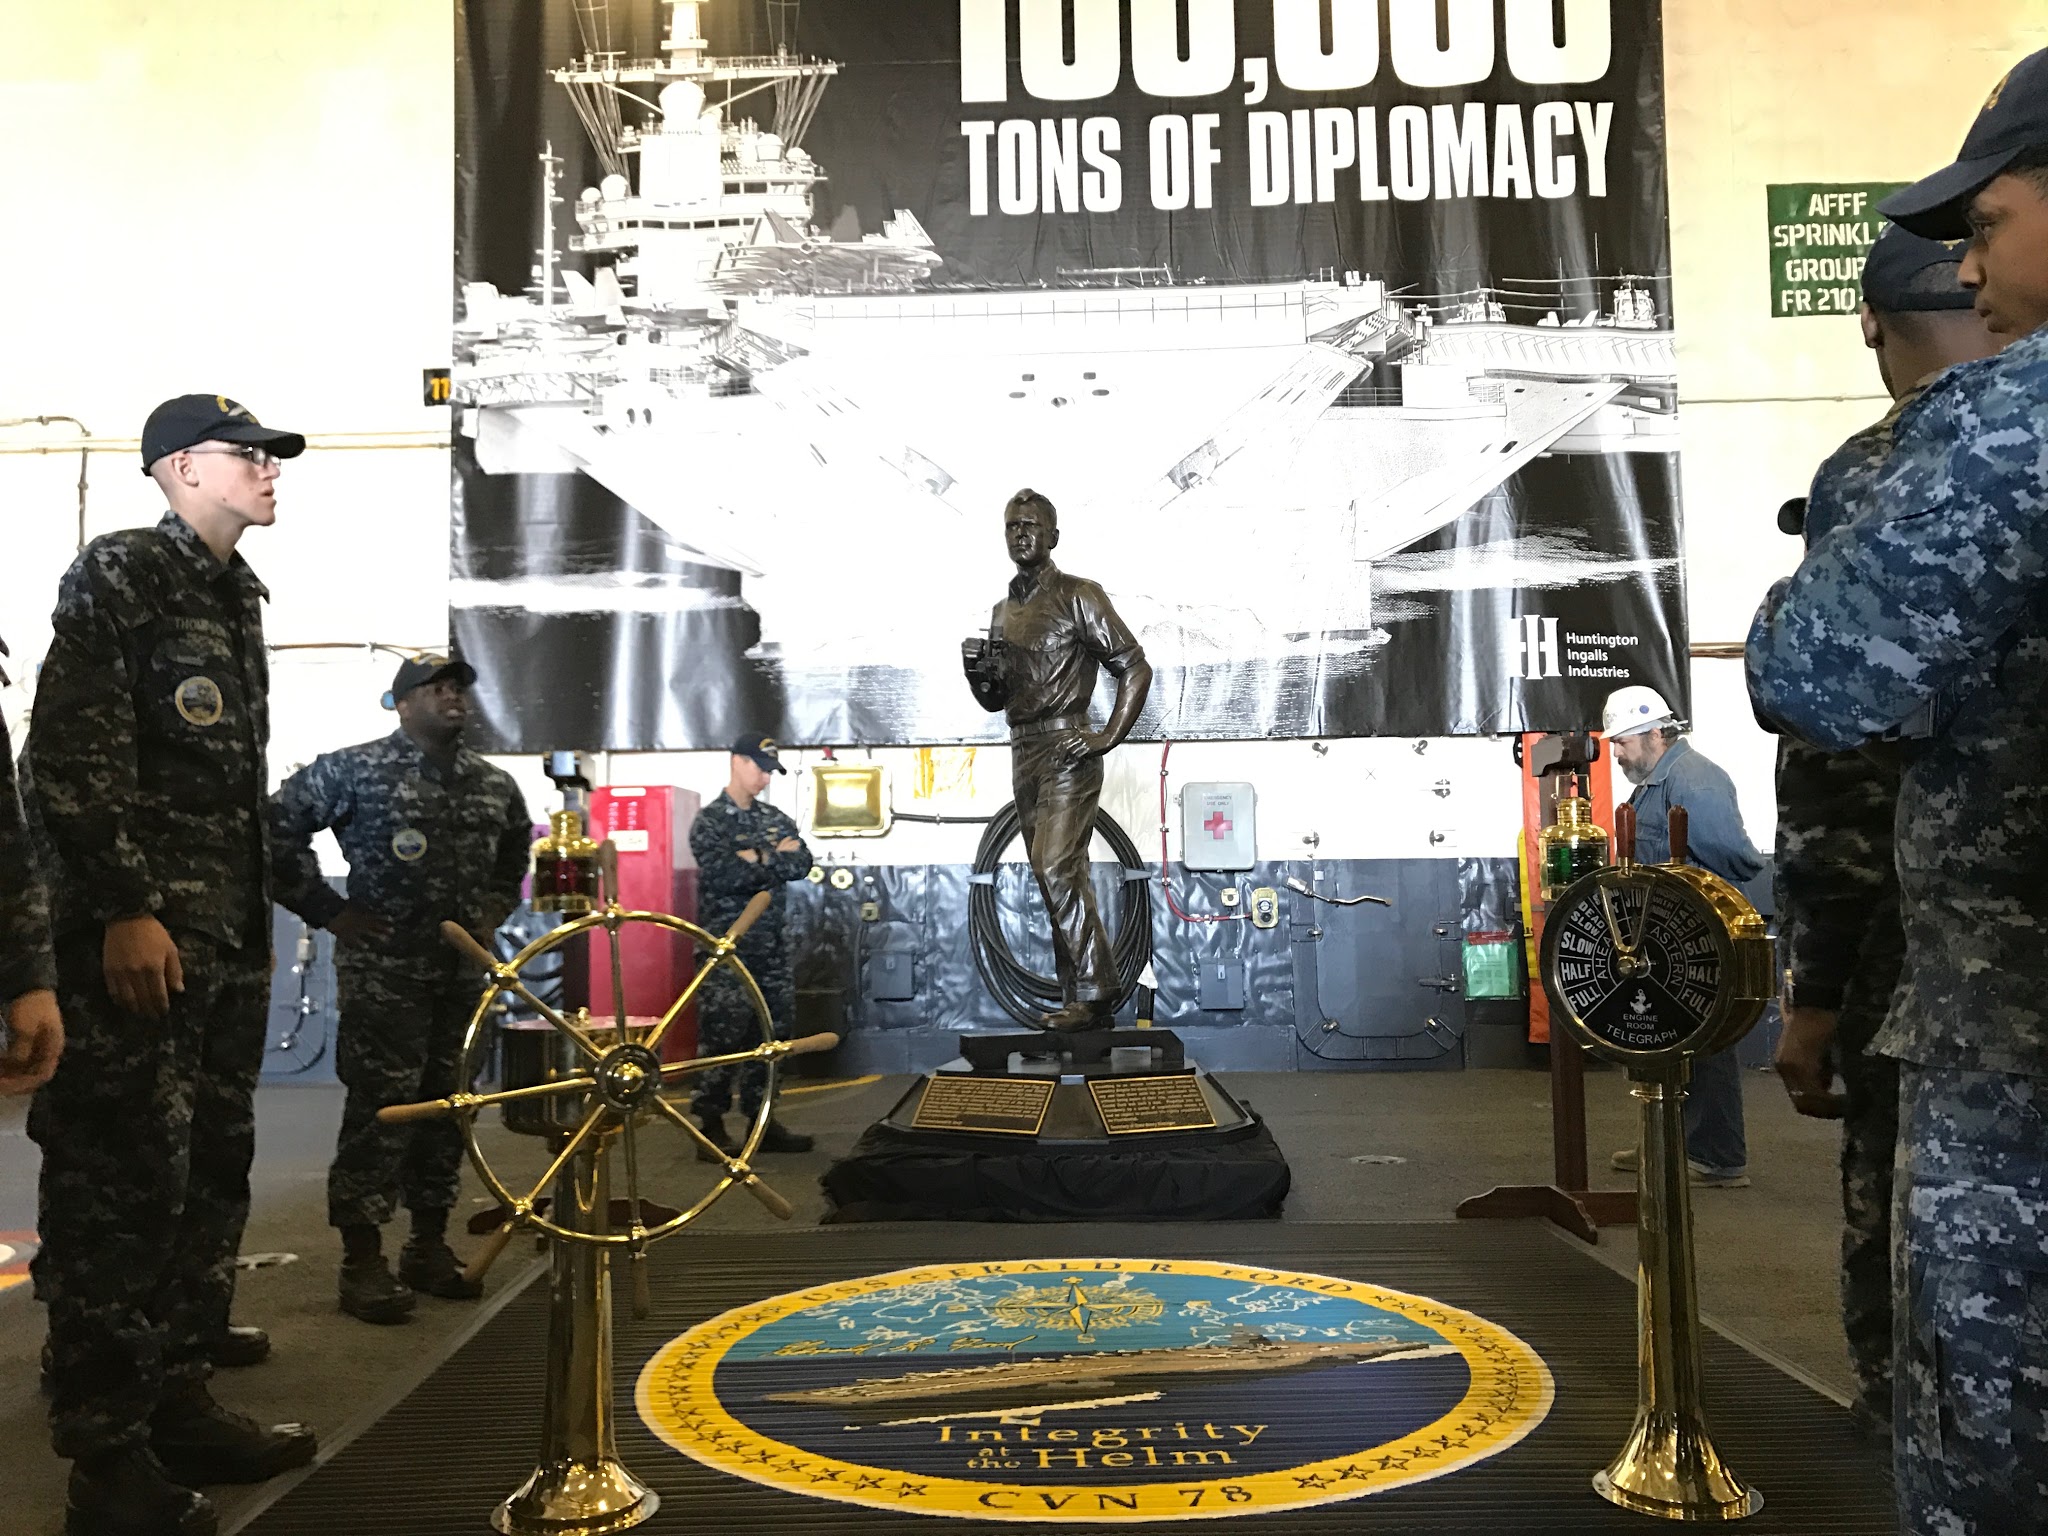 El buque tiene una estatua del expresidente Gerald R. Ford.